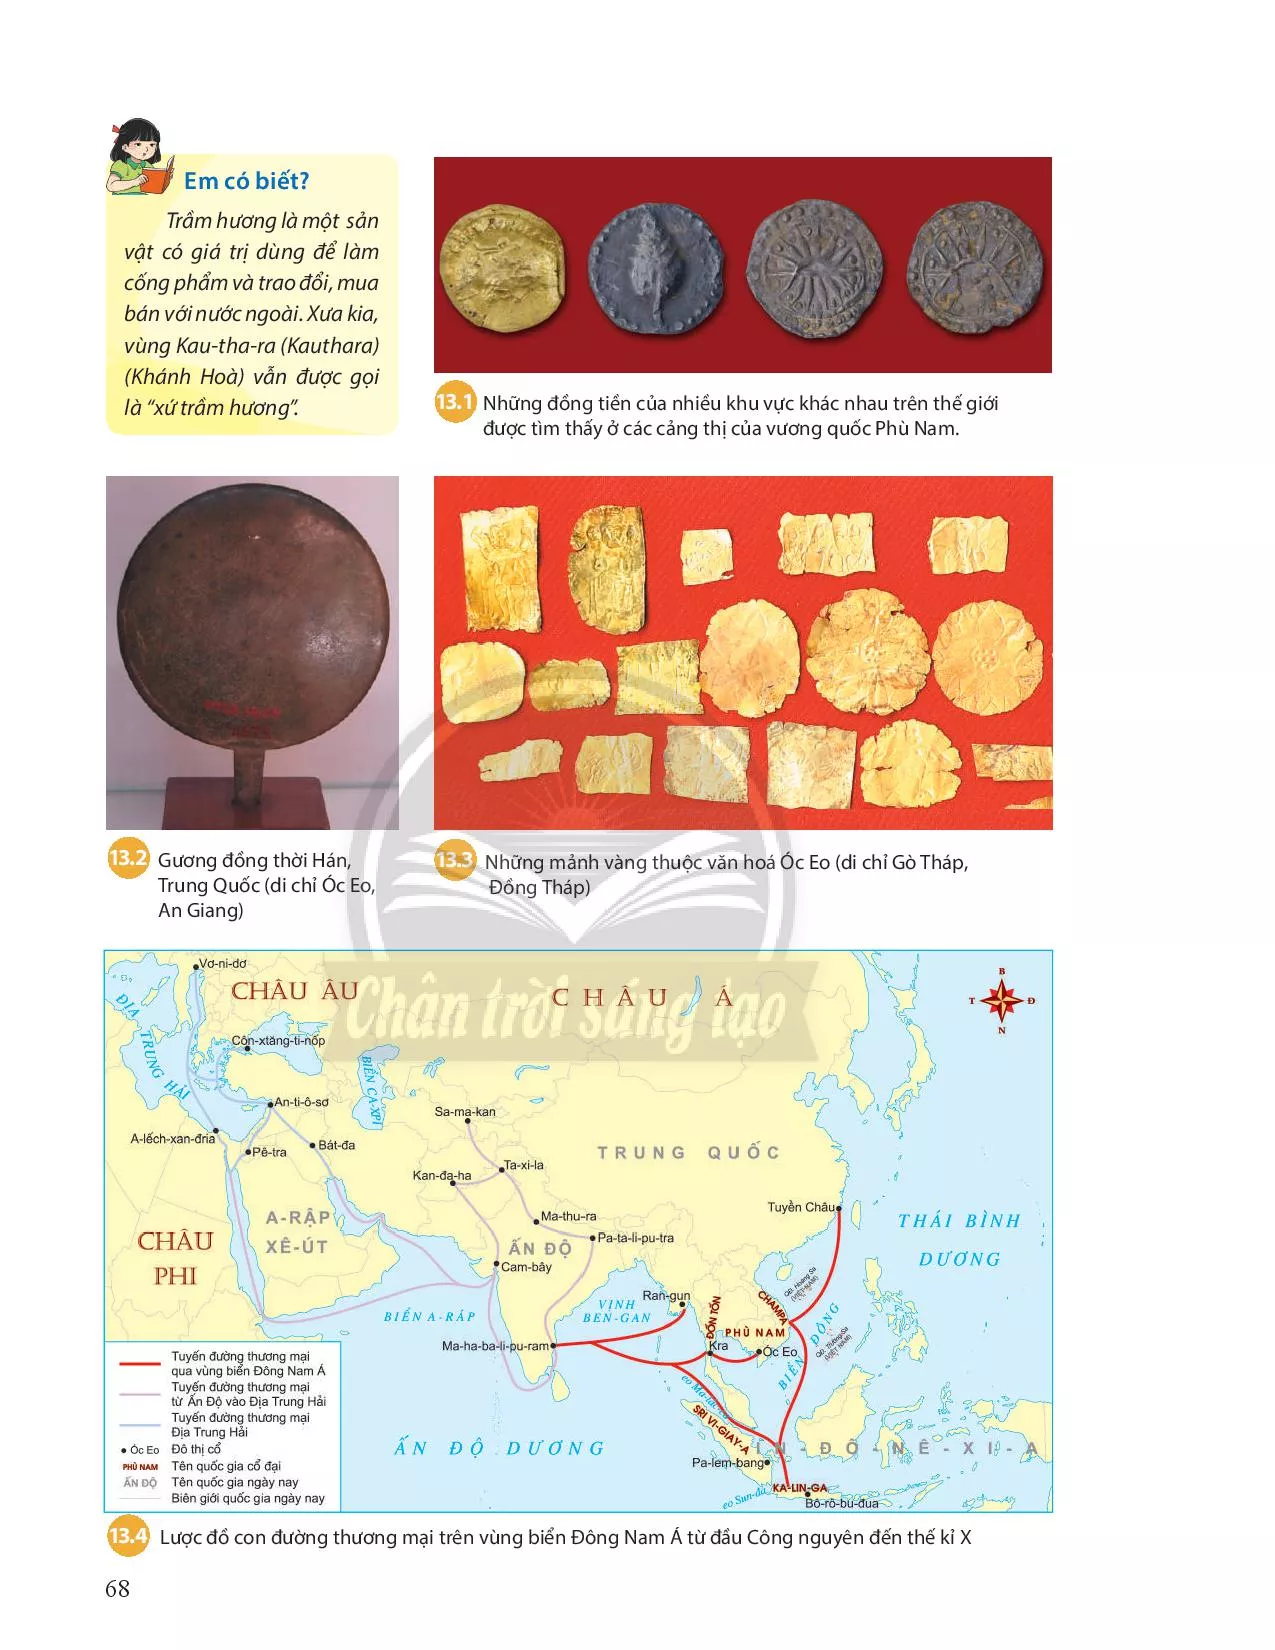 Bài 13. Giao lưu thương mại và văn hoá ở Đông Nam Á từ đầu Công nguyên đến thế kỉ X